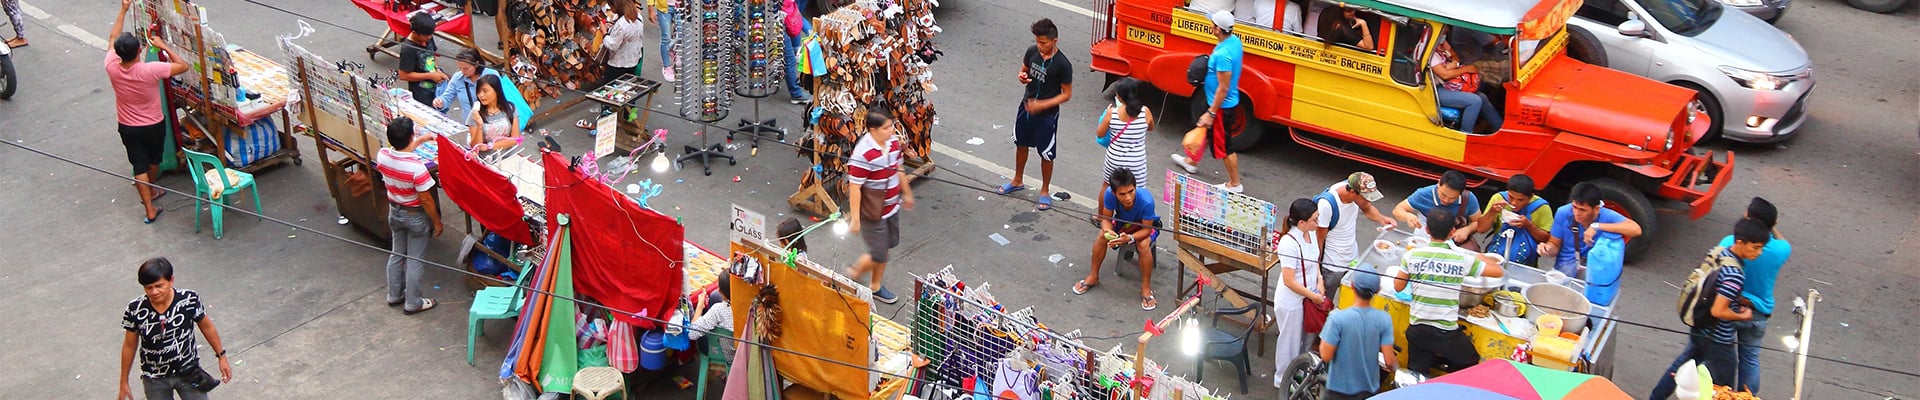 Street Vendors in Manila, Phillipines